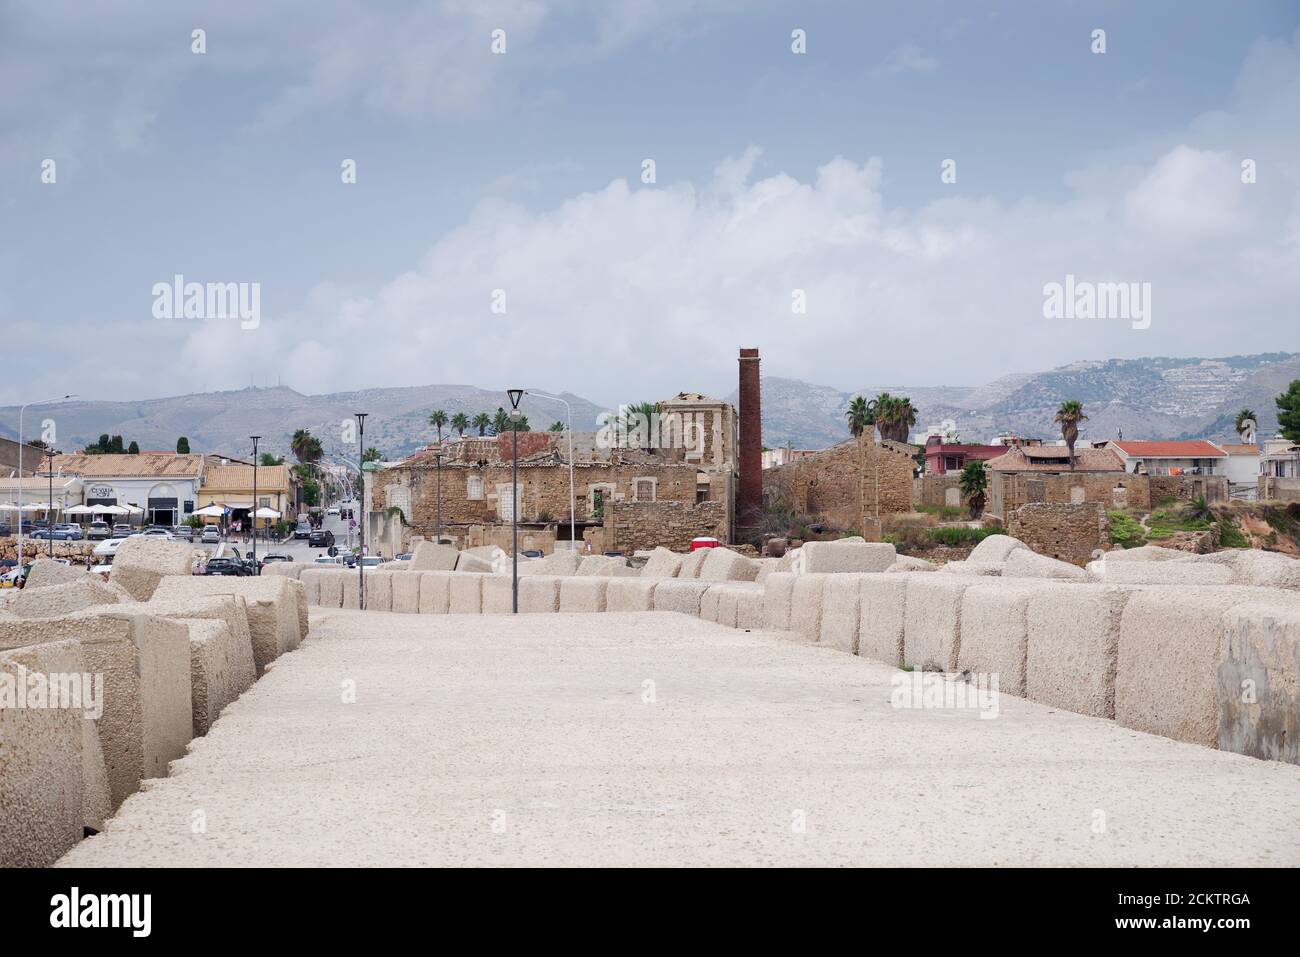 Ruines de l'ancienne usine de thon, Tonnara di Avola, vue depuis le port de plaisance d'Avola, Sicile Banque D'Images